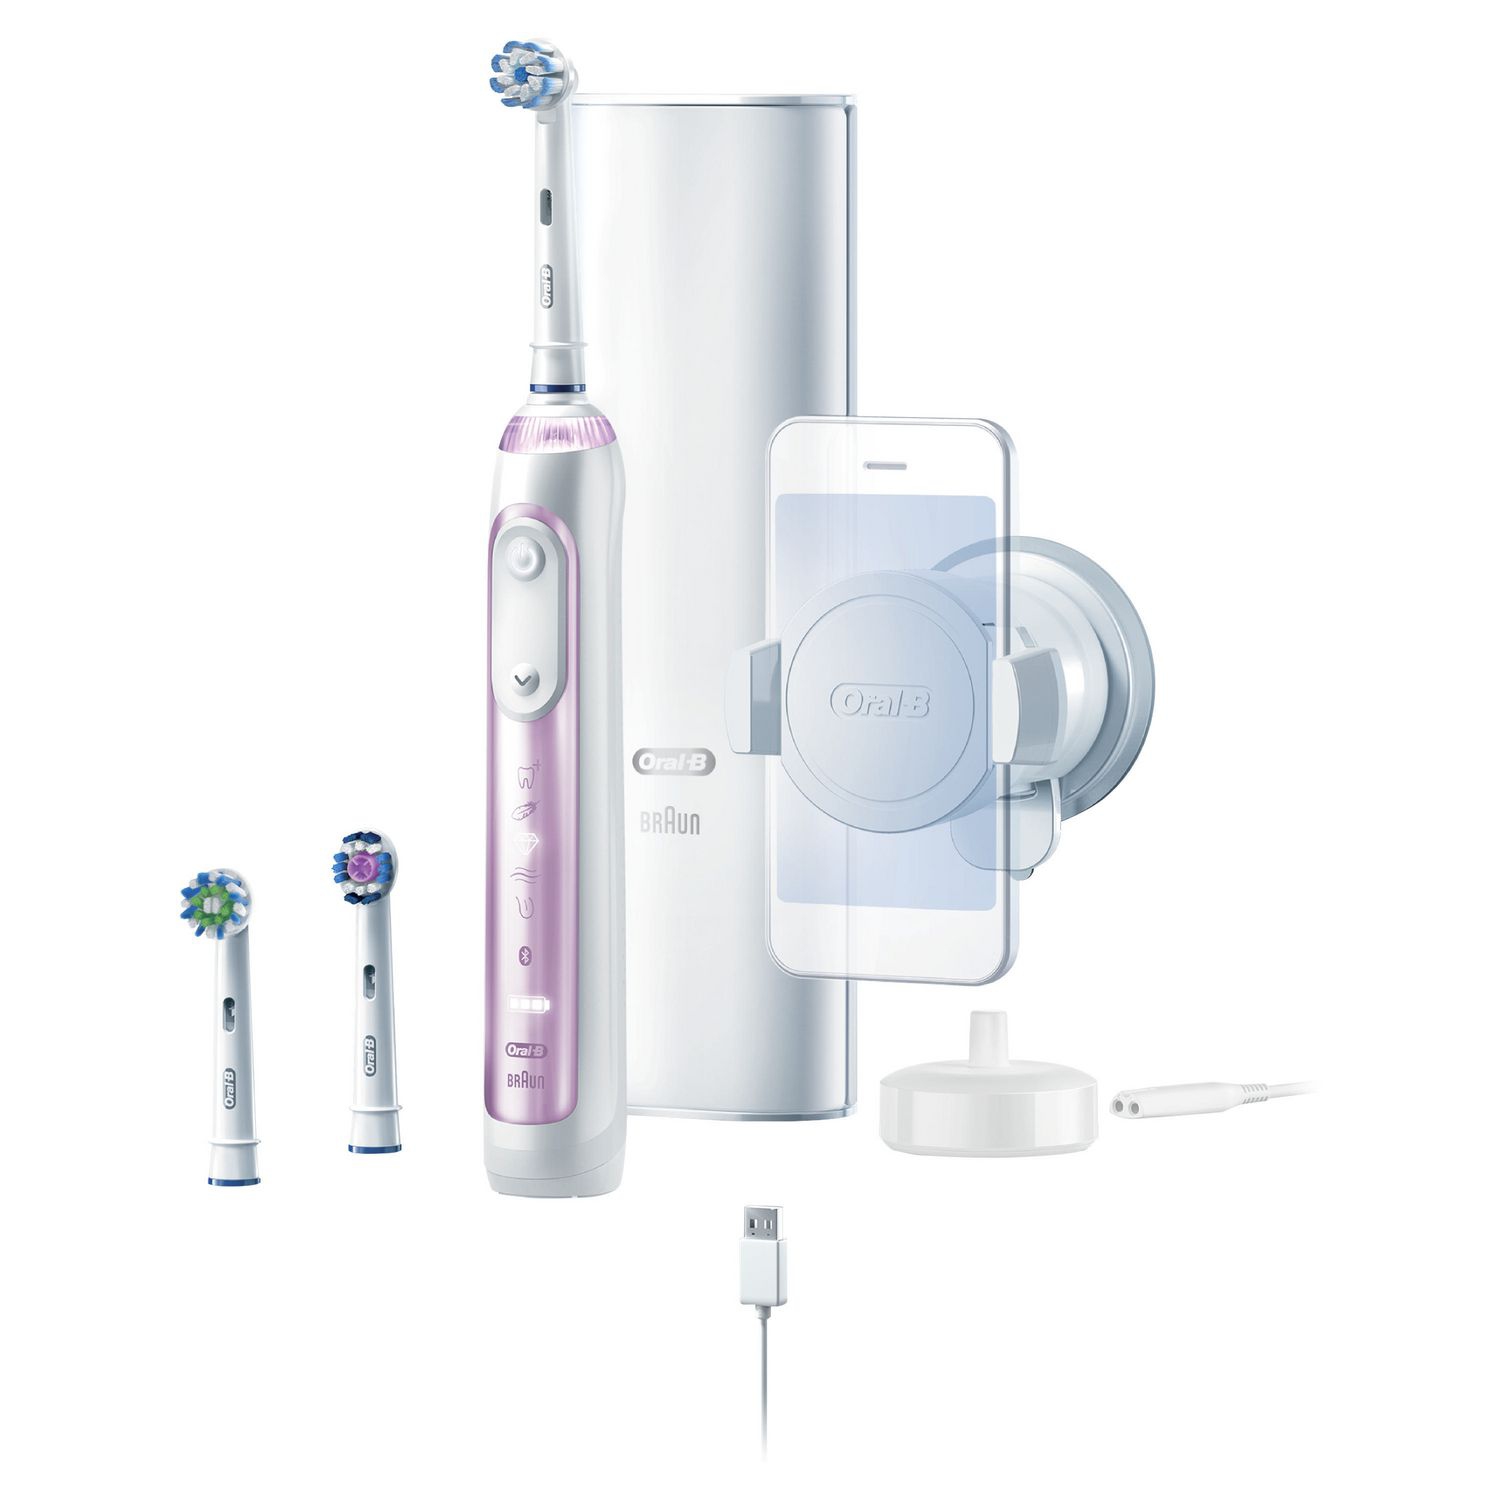 Oral-B 9600 Electric Toothbrush with 3 Brush Heads Powered by Braun - Sakura Pink